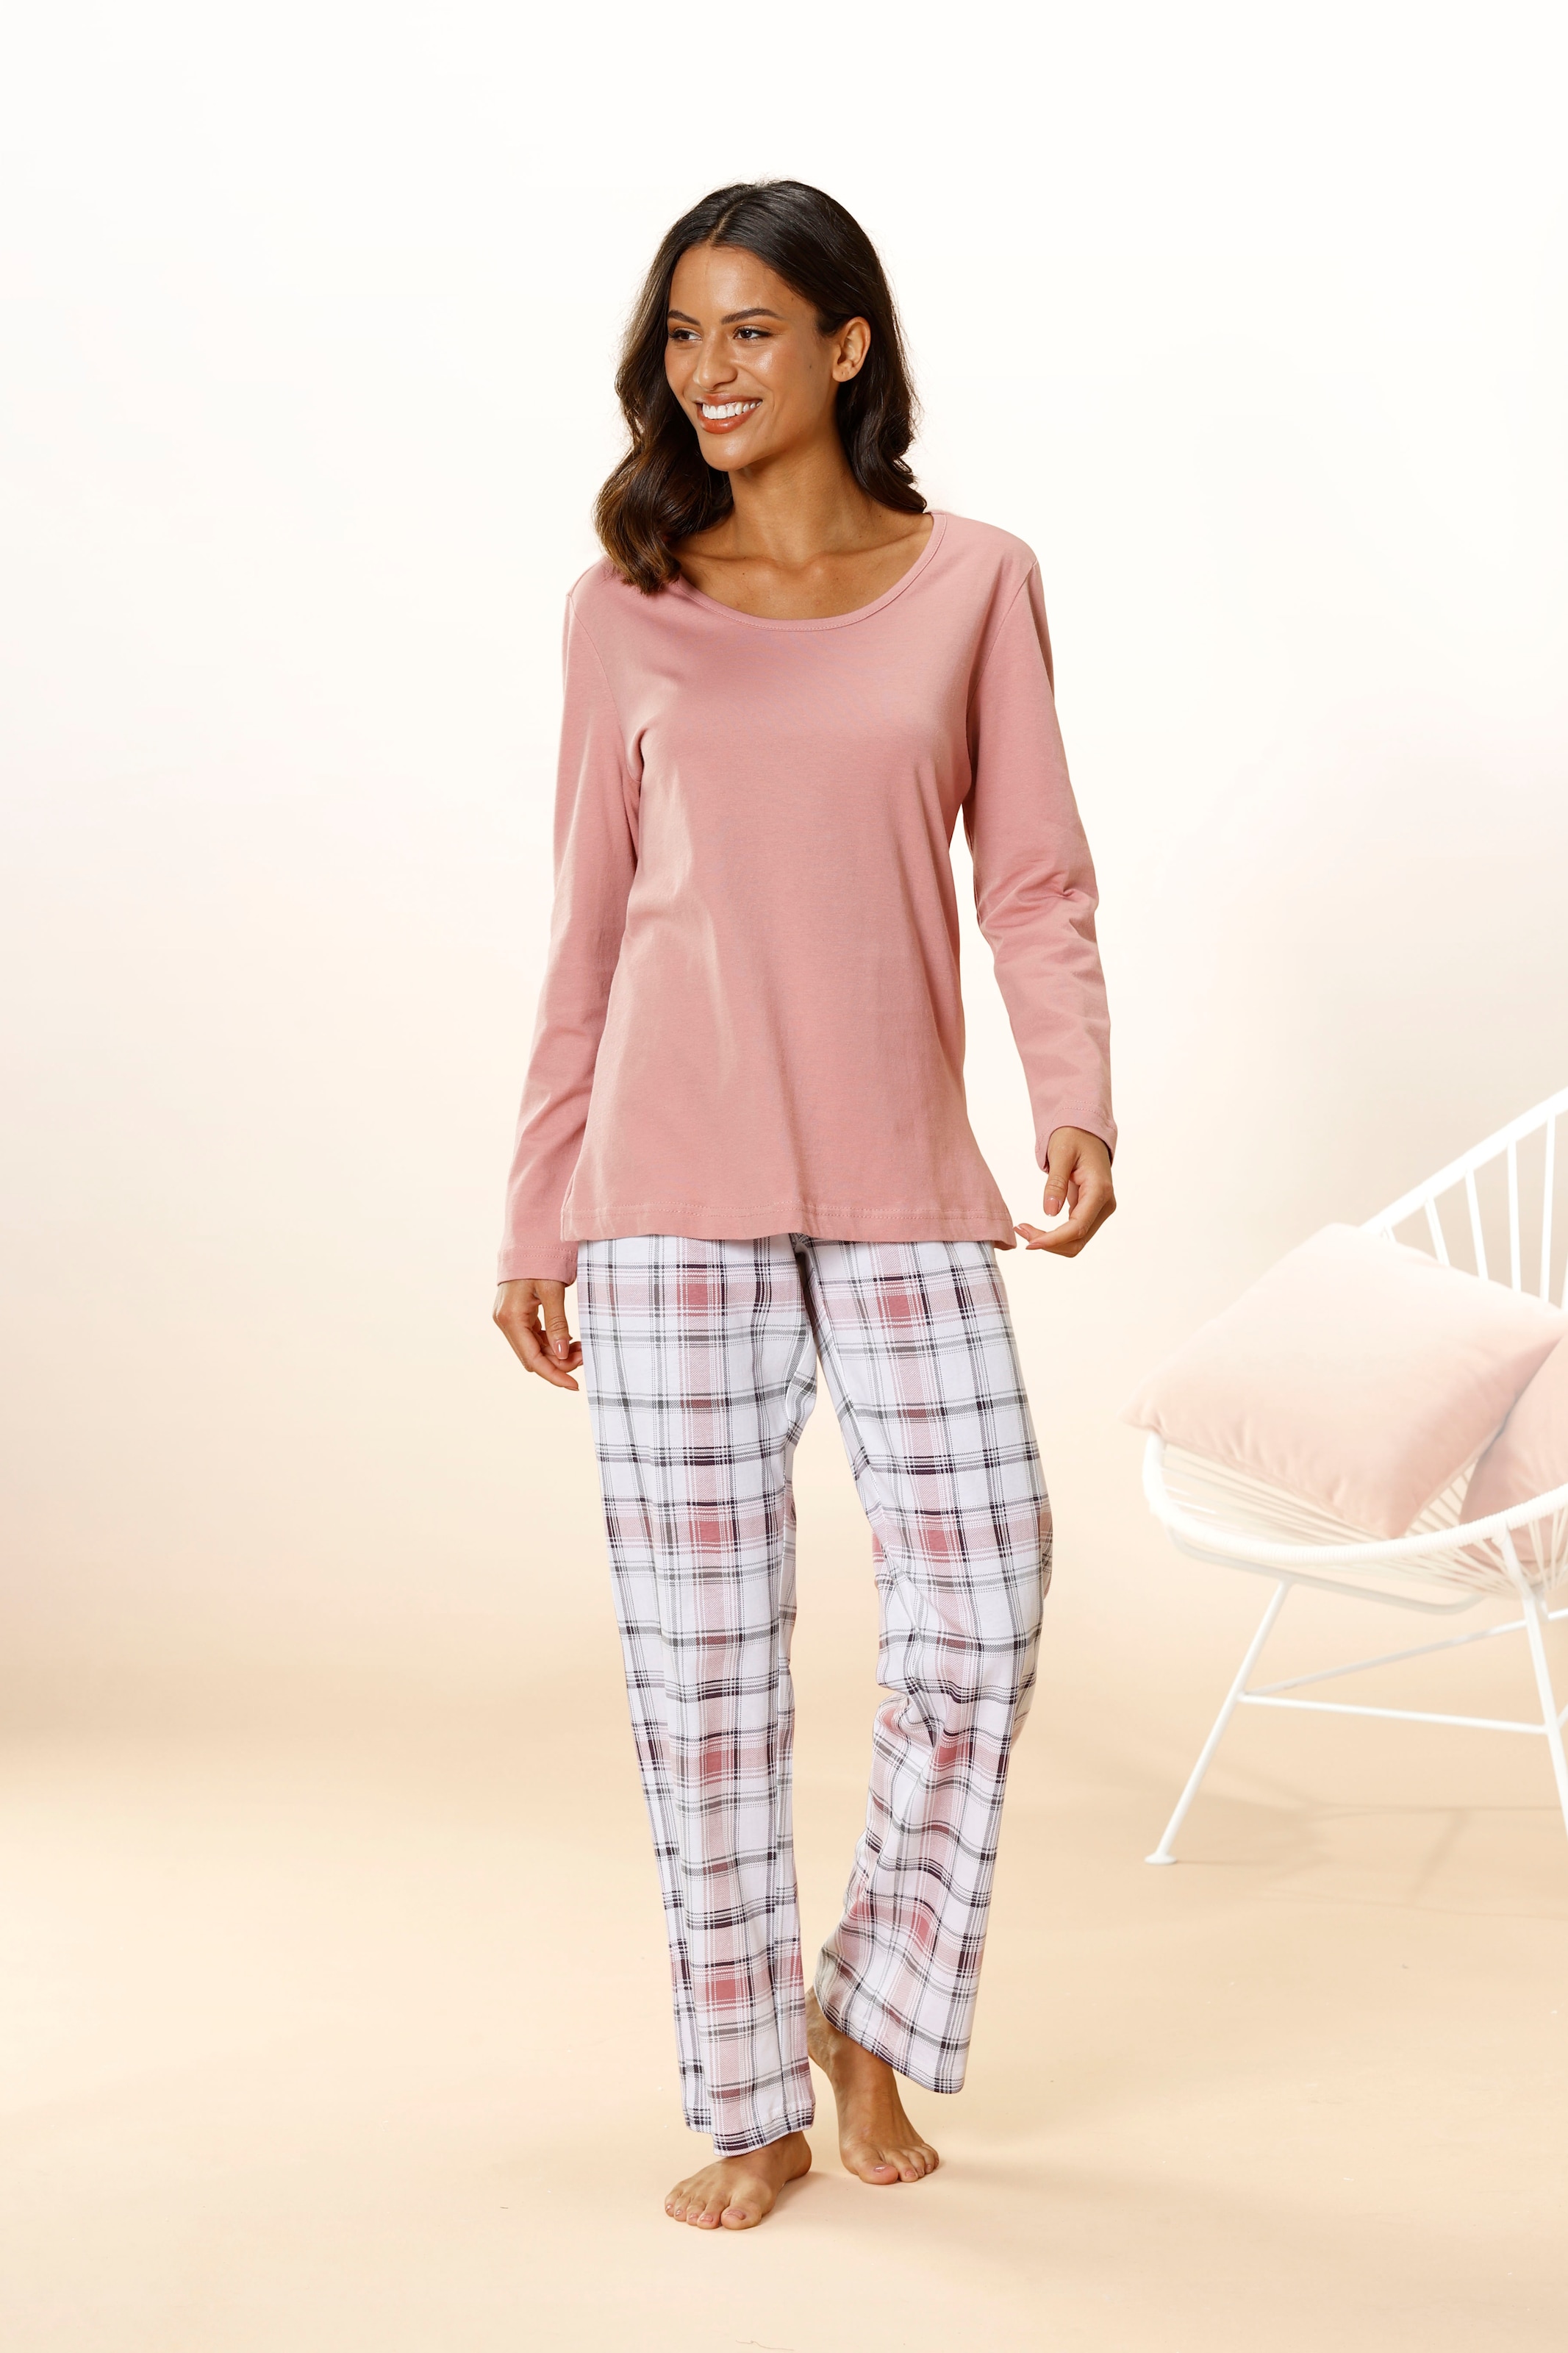 aktuelle jetzt online kaufen Pyjamas Modetrends Damen -